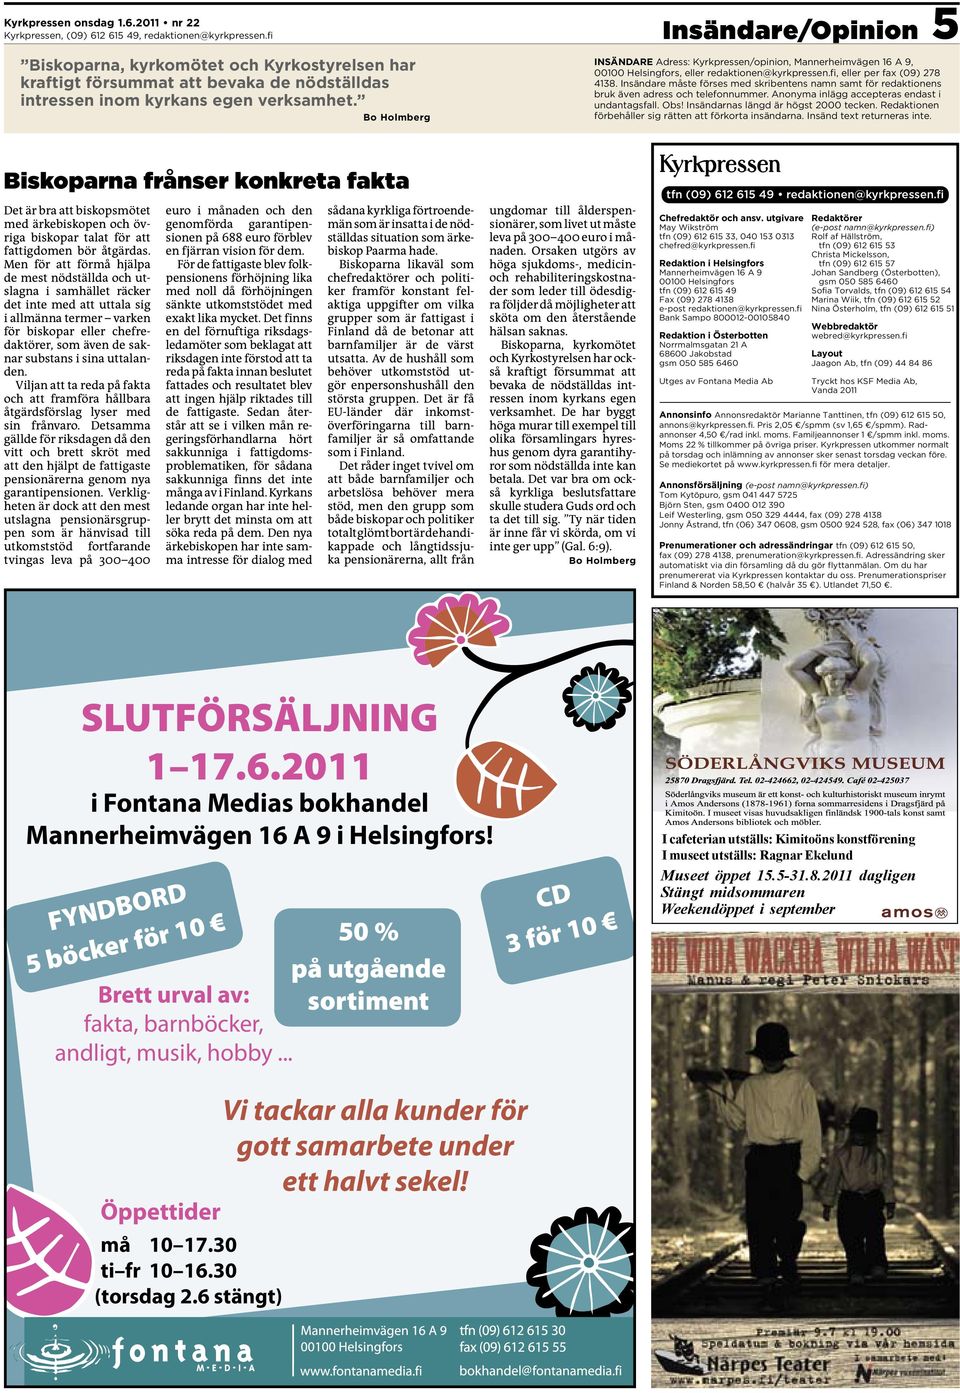 Bo Holmberg INSÄNDARE Adress: Kyrkpressen/opinion, Mannerheimvägen 16 A 9, 00100 Helsingfors, eller redaktionen@kyrkpressen.fi, eller per fax (09) 278 4138.